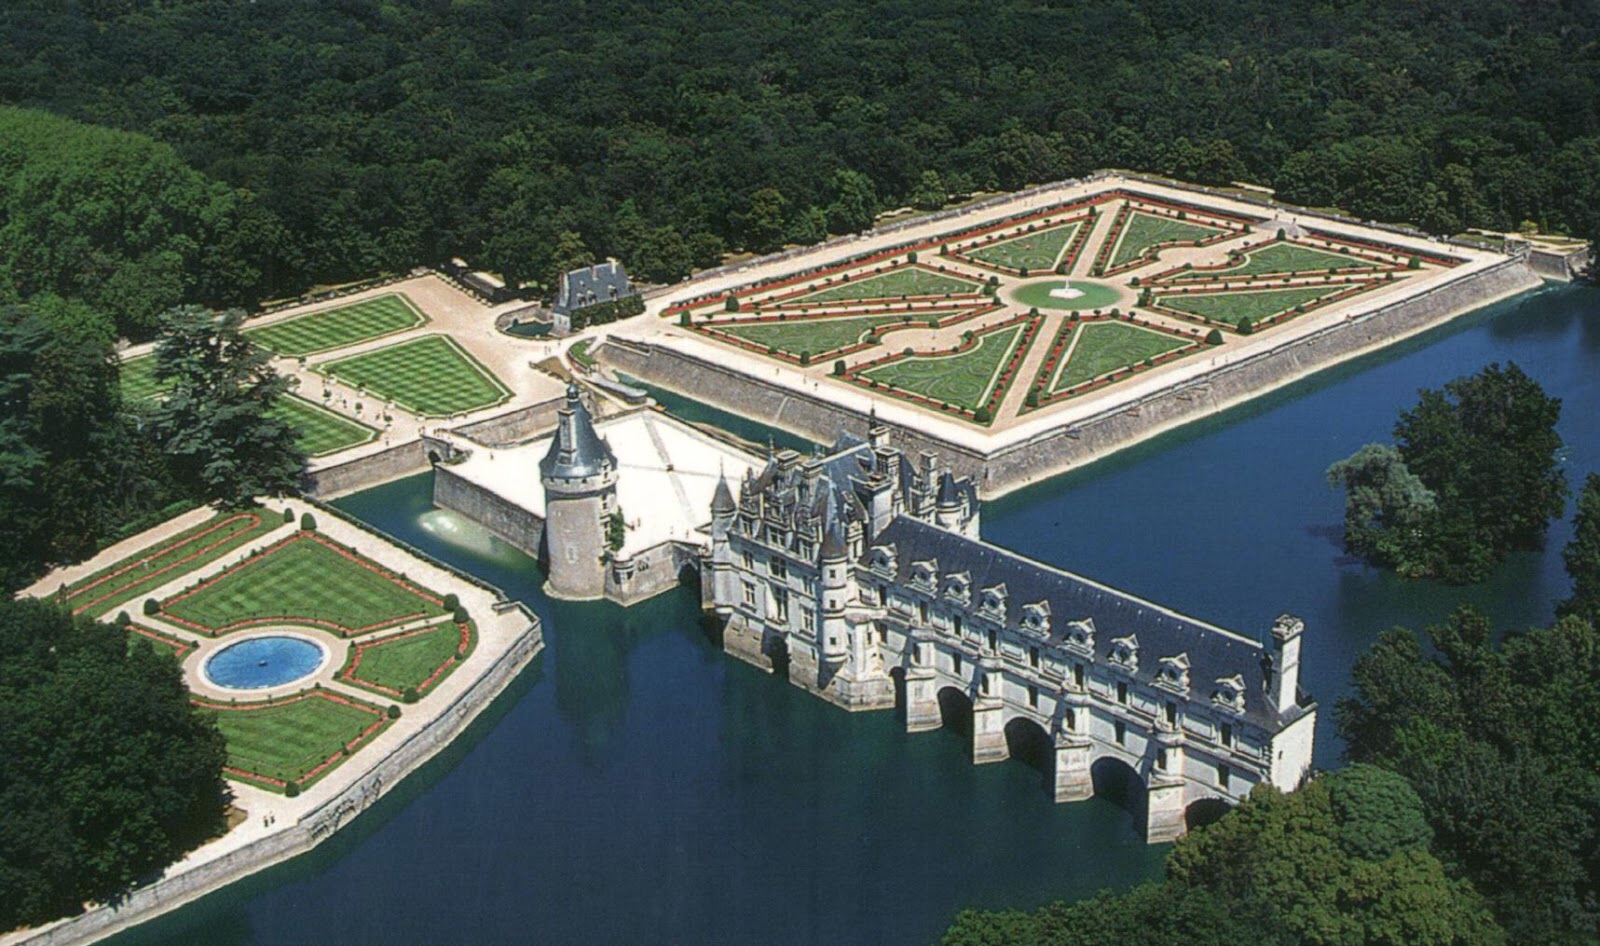 Loire Valley Chateau De Chenonceau And Diane De Poitiers